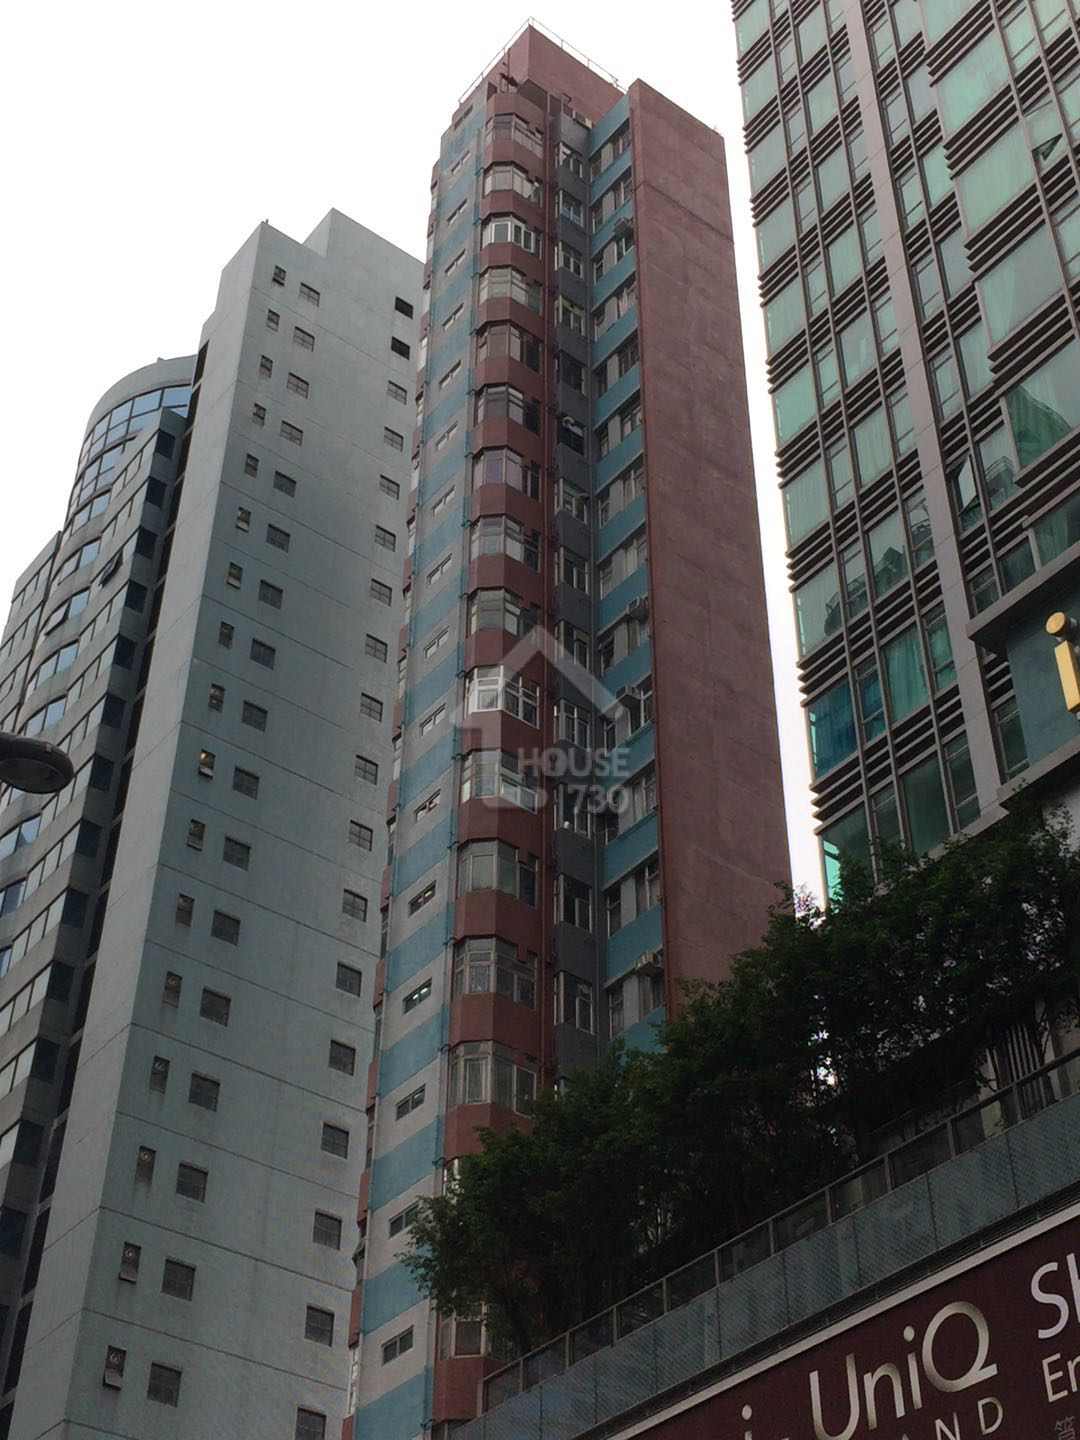 Shau Kei Wan KA FOOK BUILDING Upper Floor Estate/Building Outlook House730-5509817